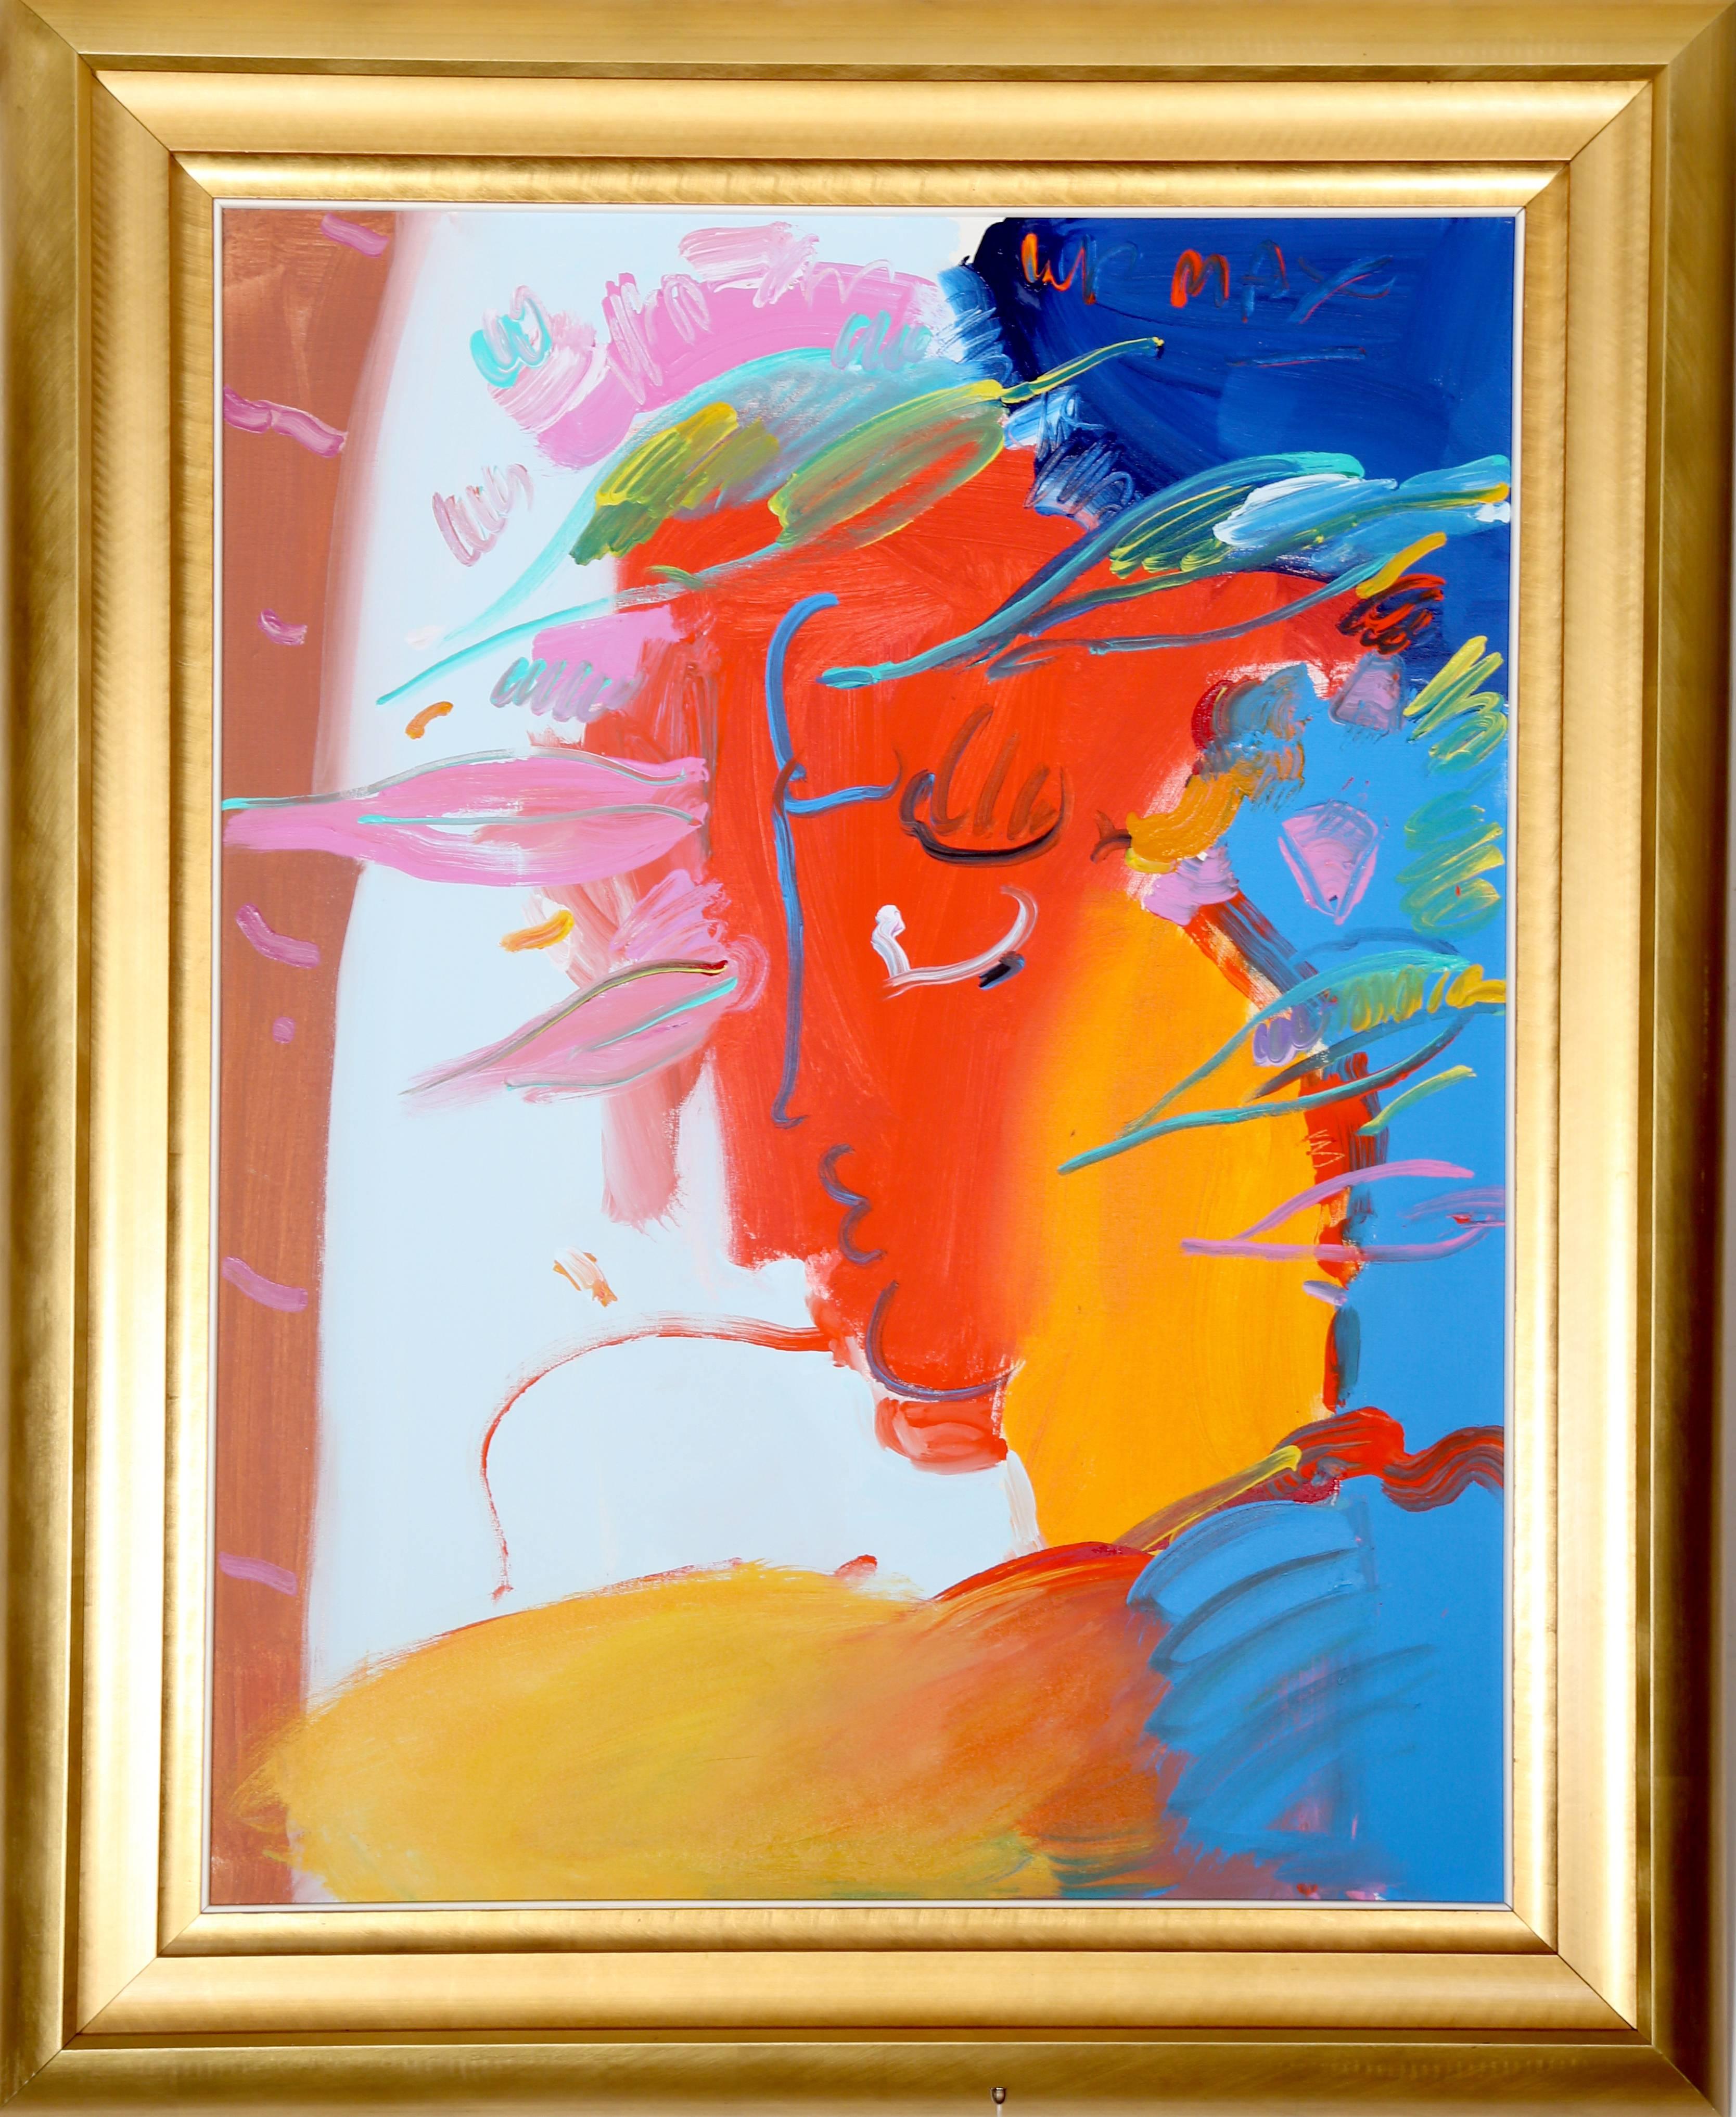 Künstler: Peter Max, deutsch/amerikanisch (1937 - )
Titel: Profil
Jahr: 1986
Medium: Acryl auf Leinwand, signiert u.r.
Größe: 40 Zoll x 30 Zoll (101,6 cm x 76,2 cm)
Rahmengröße: 49,5 x 39,5 Zoll 